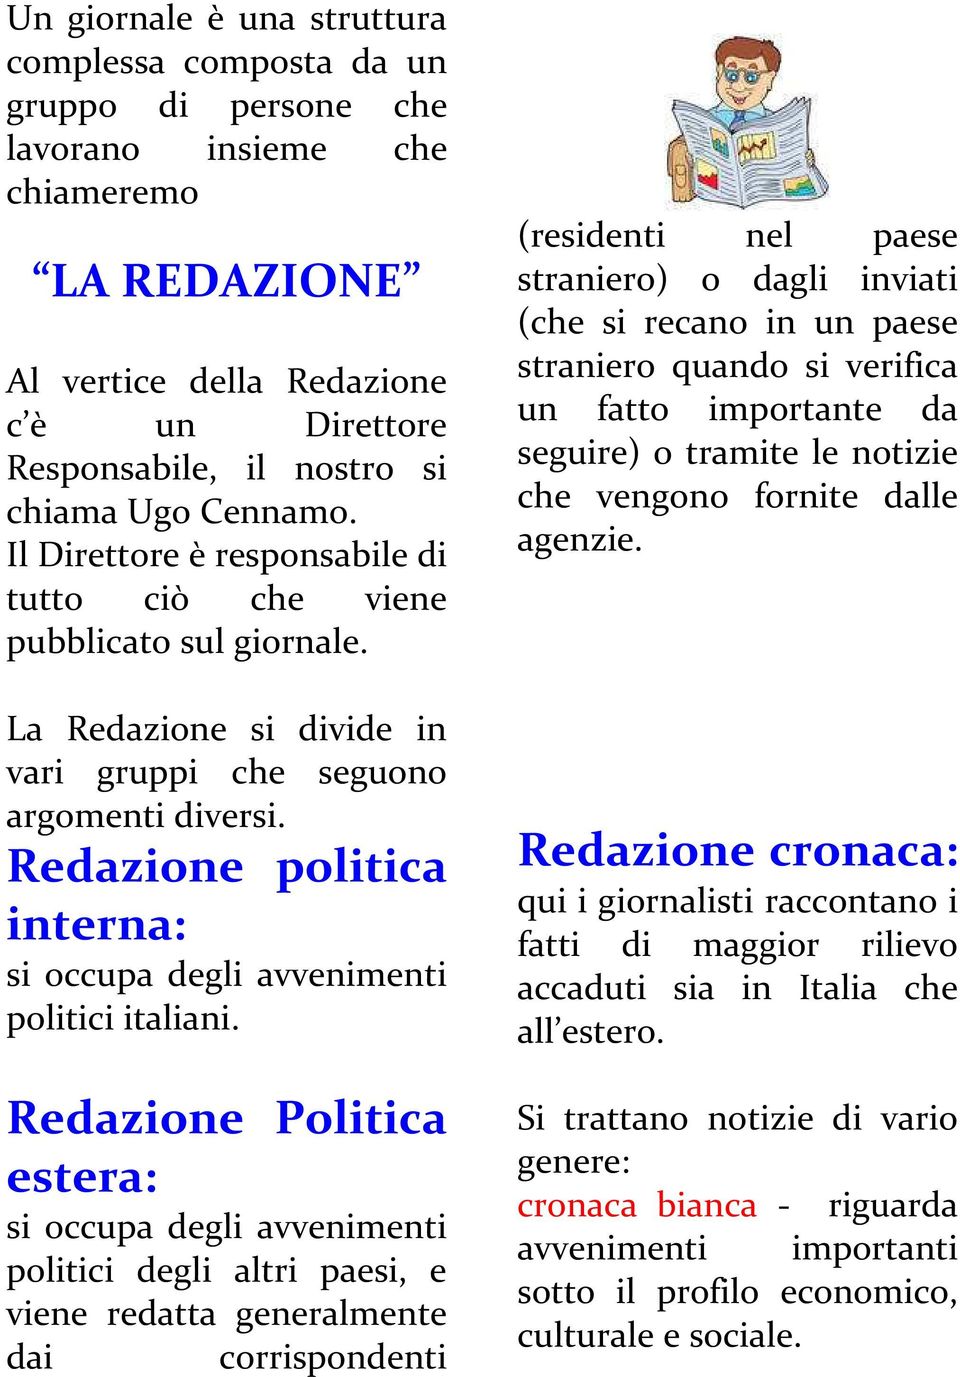 Redazione politica interna: si occupa degli avvenimenti politici italiani.